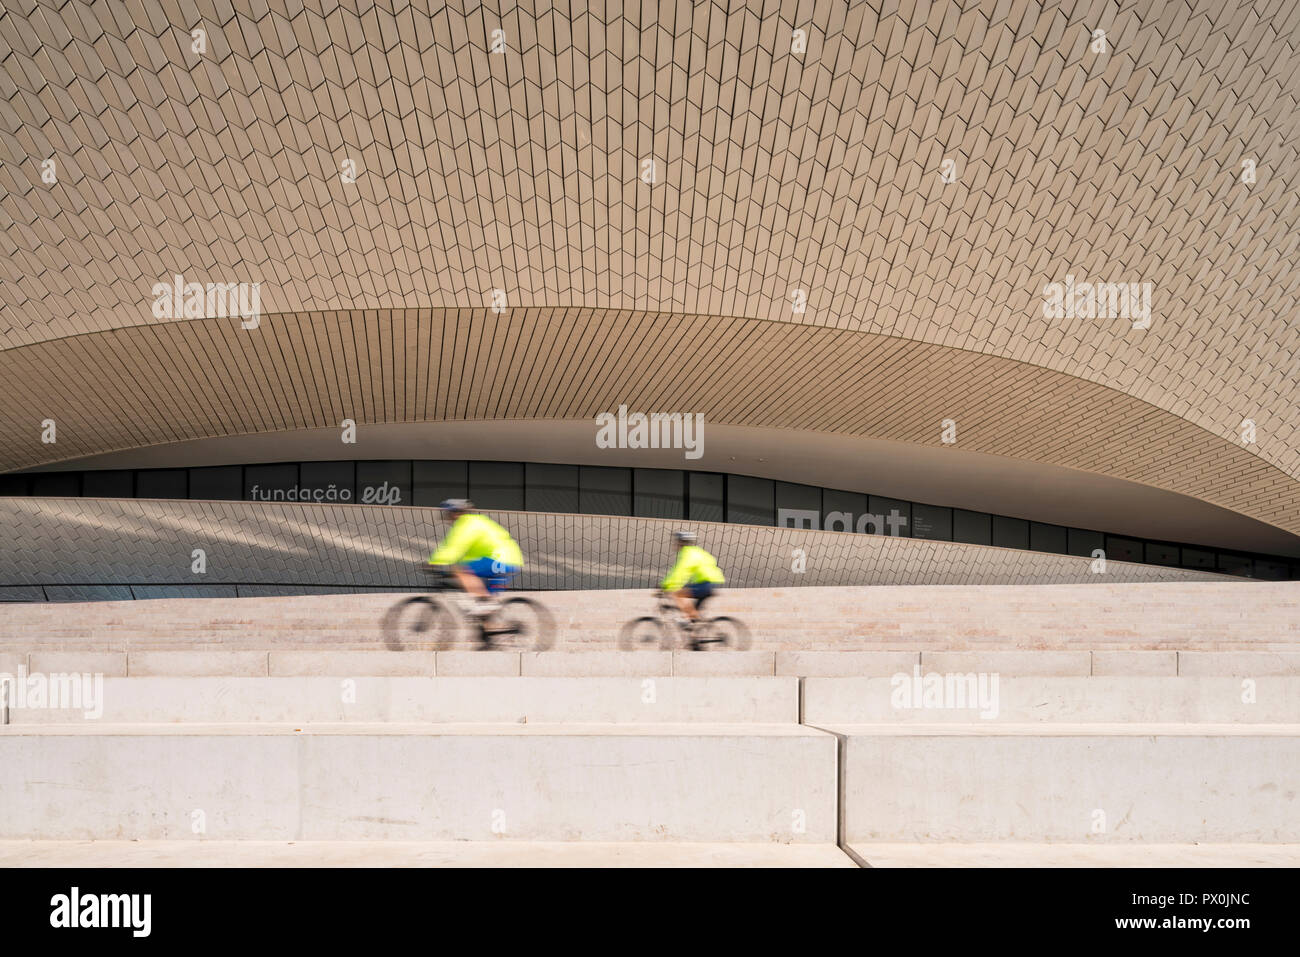 Vue extérieure de la MAAT - Musée d'art, d'architecture et de la Technologie, Lisbonne, Portugal. Deux cyclistes sur les étapes d'une terrasse. Banque D'Images